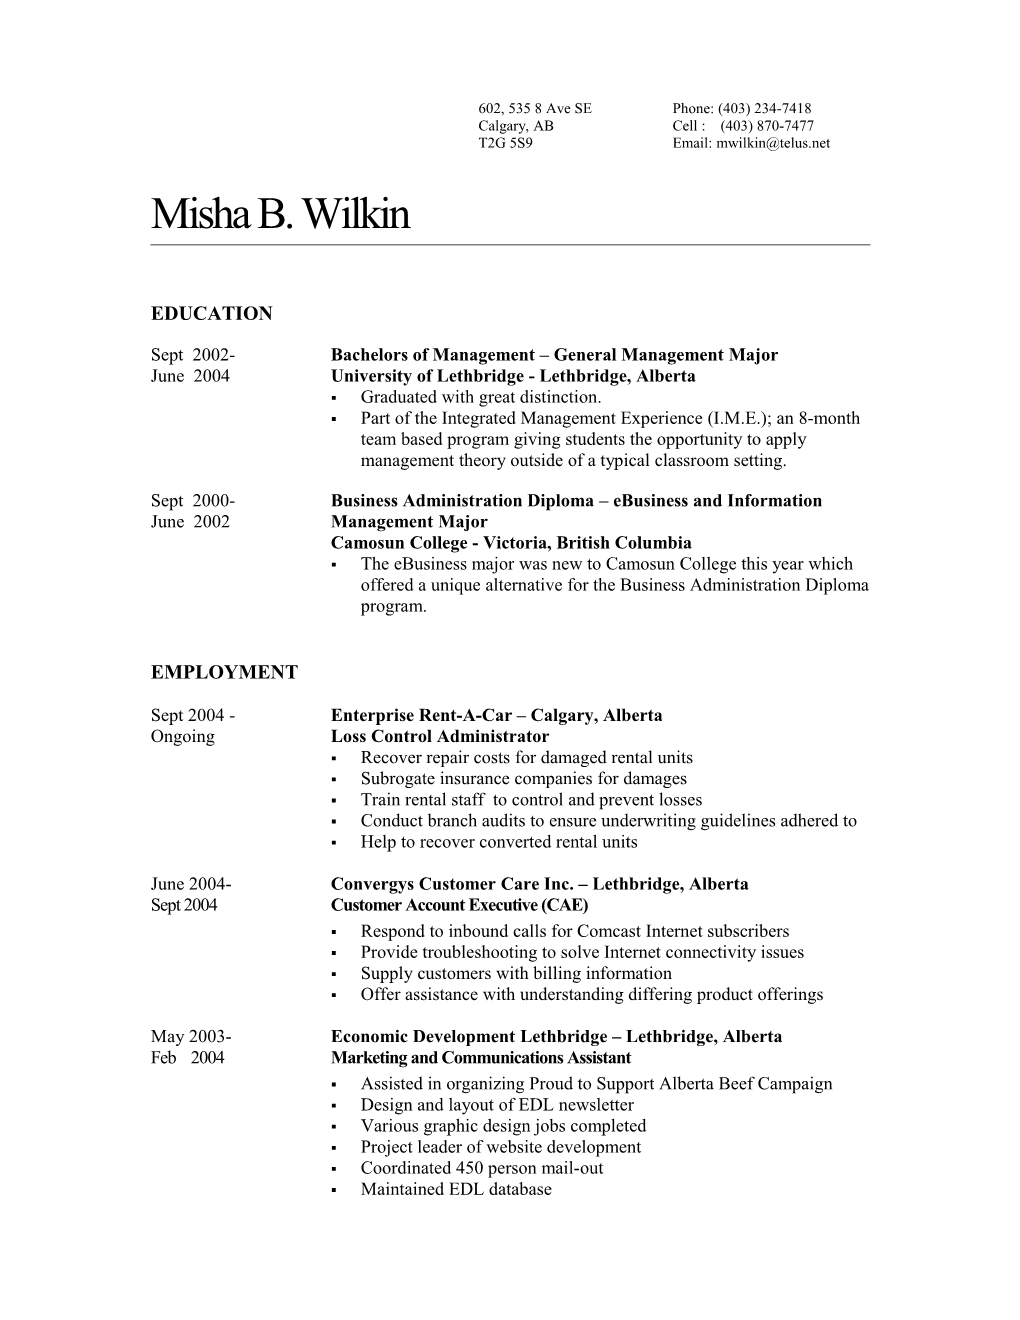 Misha B. Wilkin, Resume